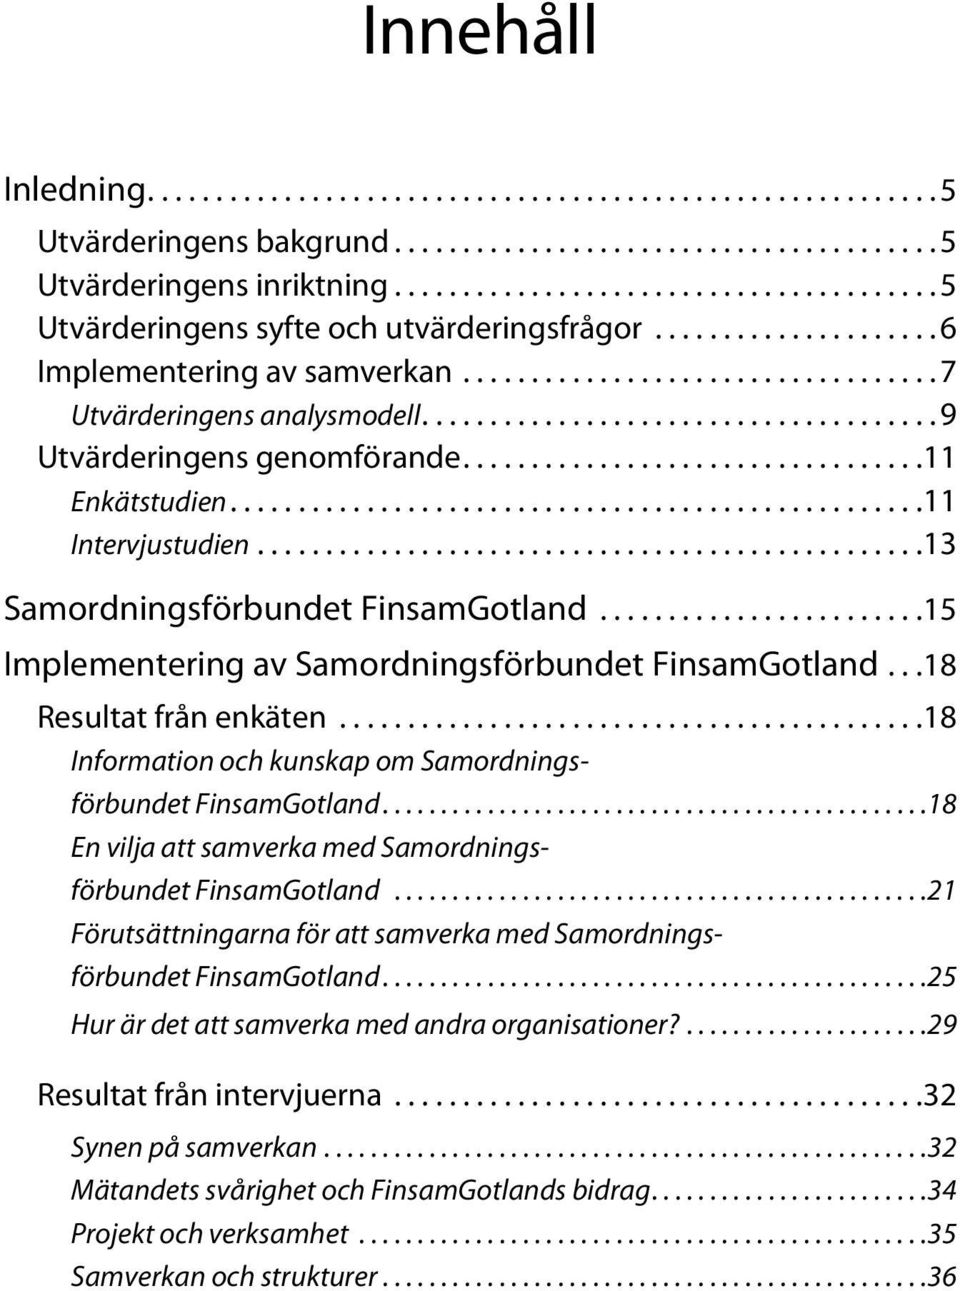 ..18 Information och kunskap om Samordningsförbundet FinsamGotland... 18 En vilja att samverka med Samordningsförbundet FinsamGotland.